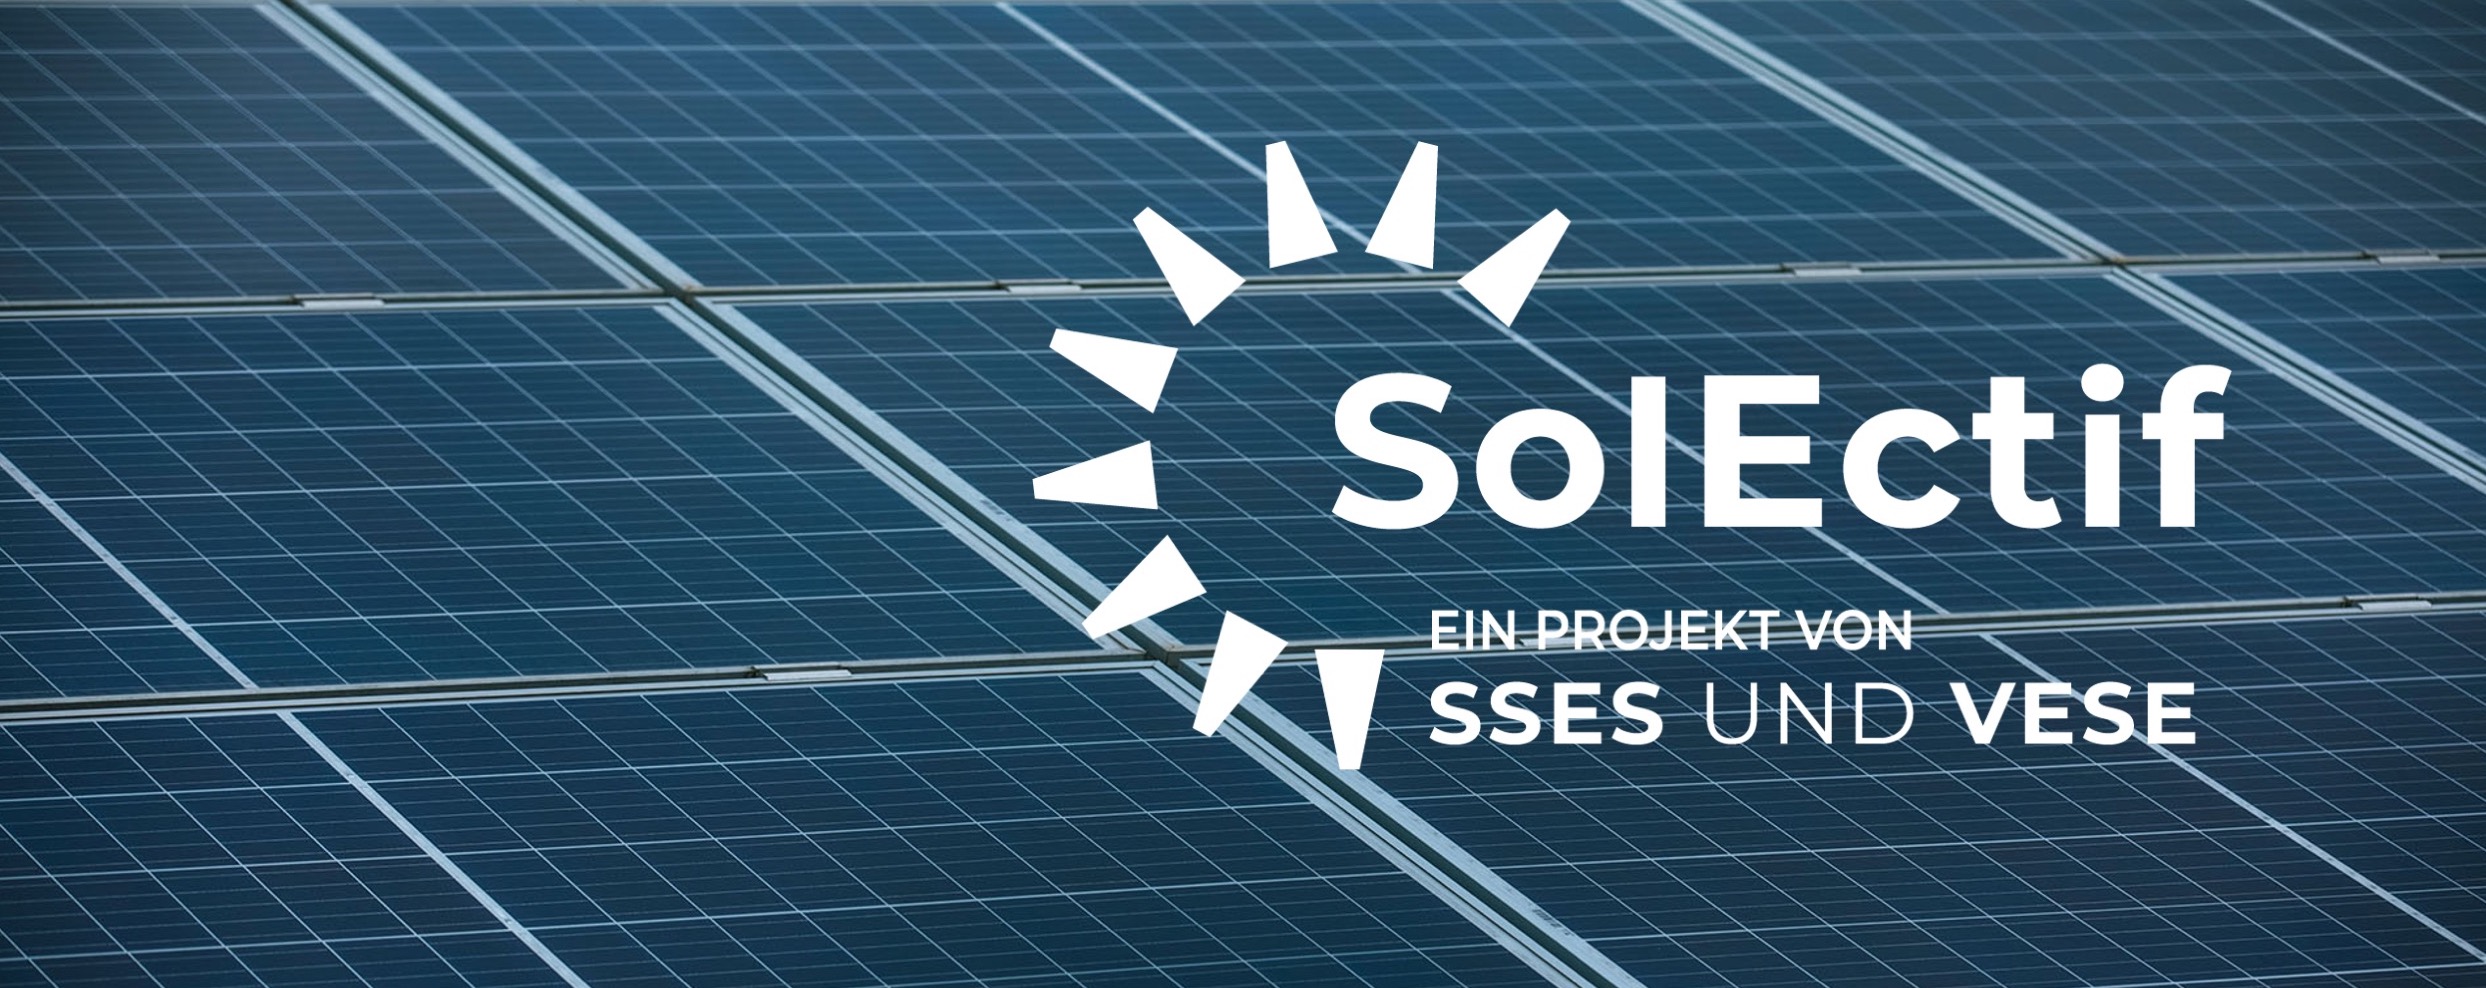 SolEctif.ch - Solargenossenschaften starten durch!